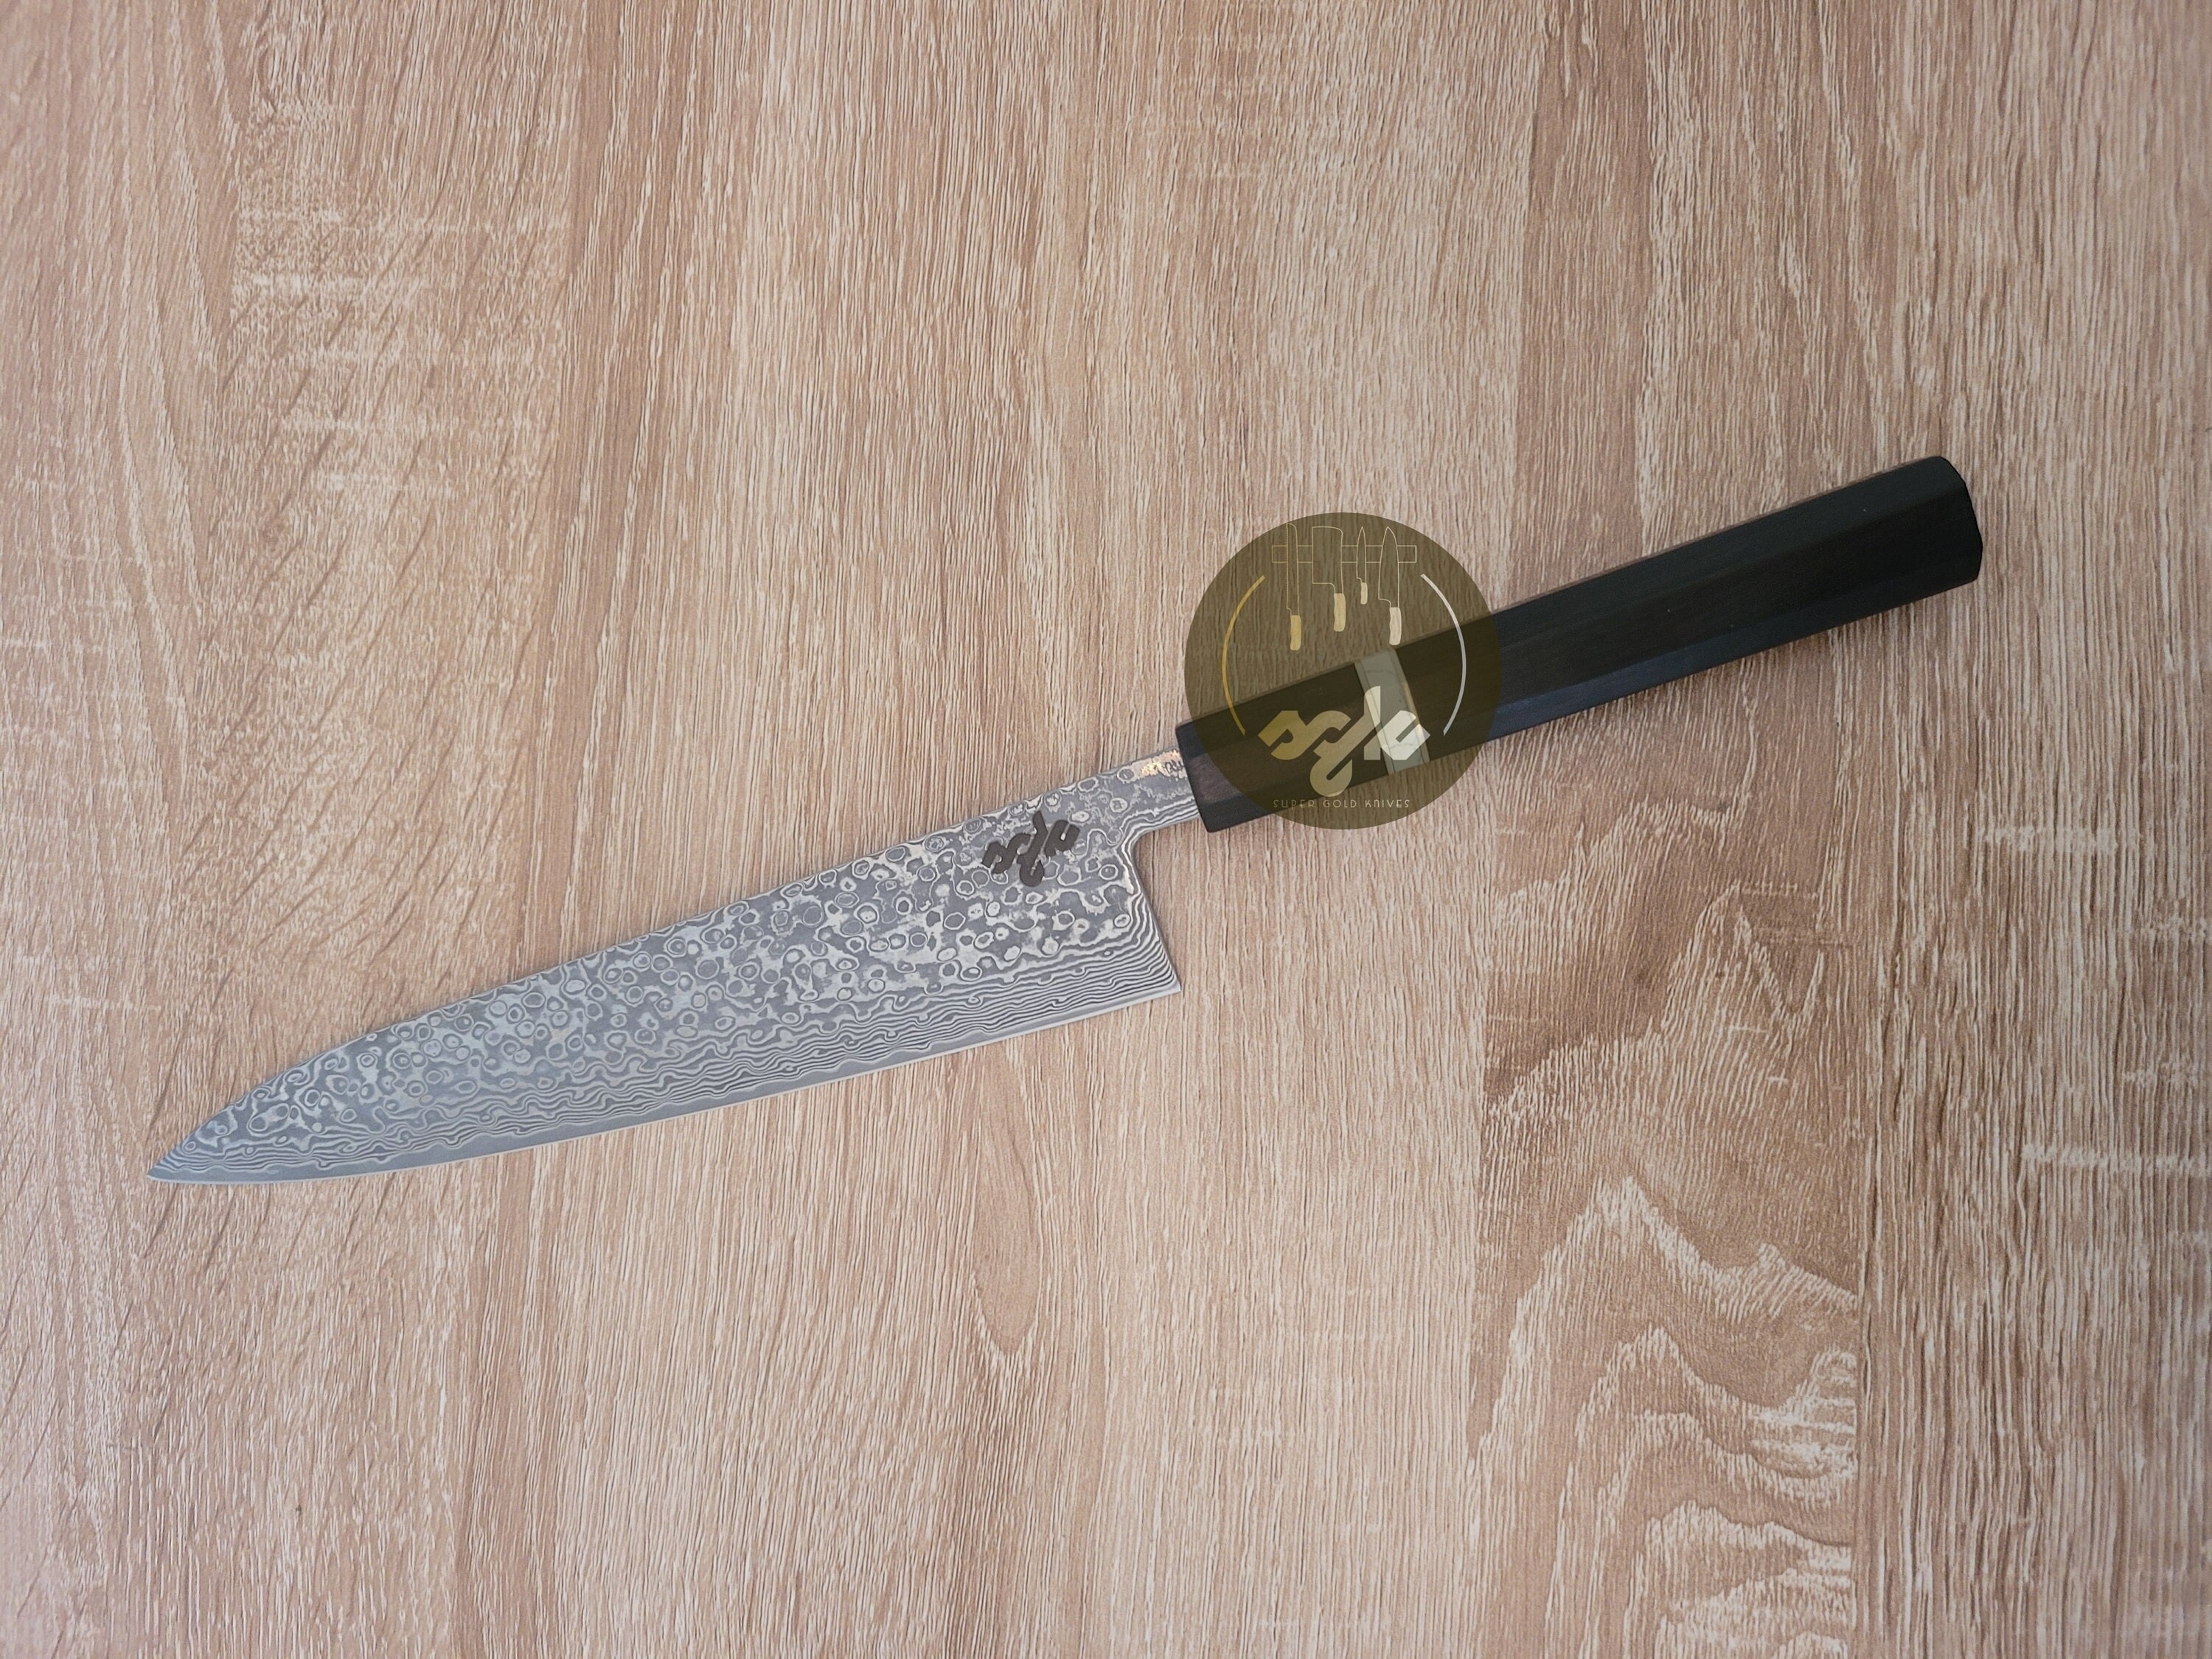 Nice Damascus/vg-10 Gyuto Chef Knife, Handle in Bocote/ebony